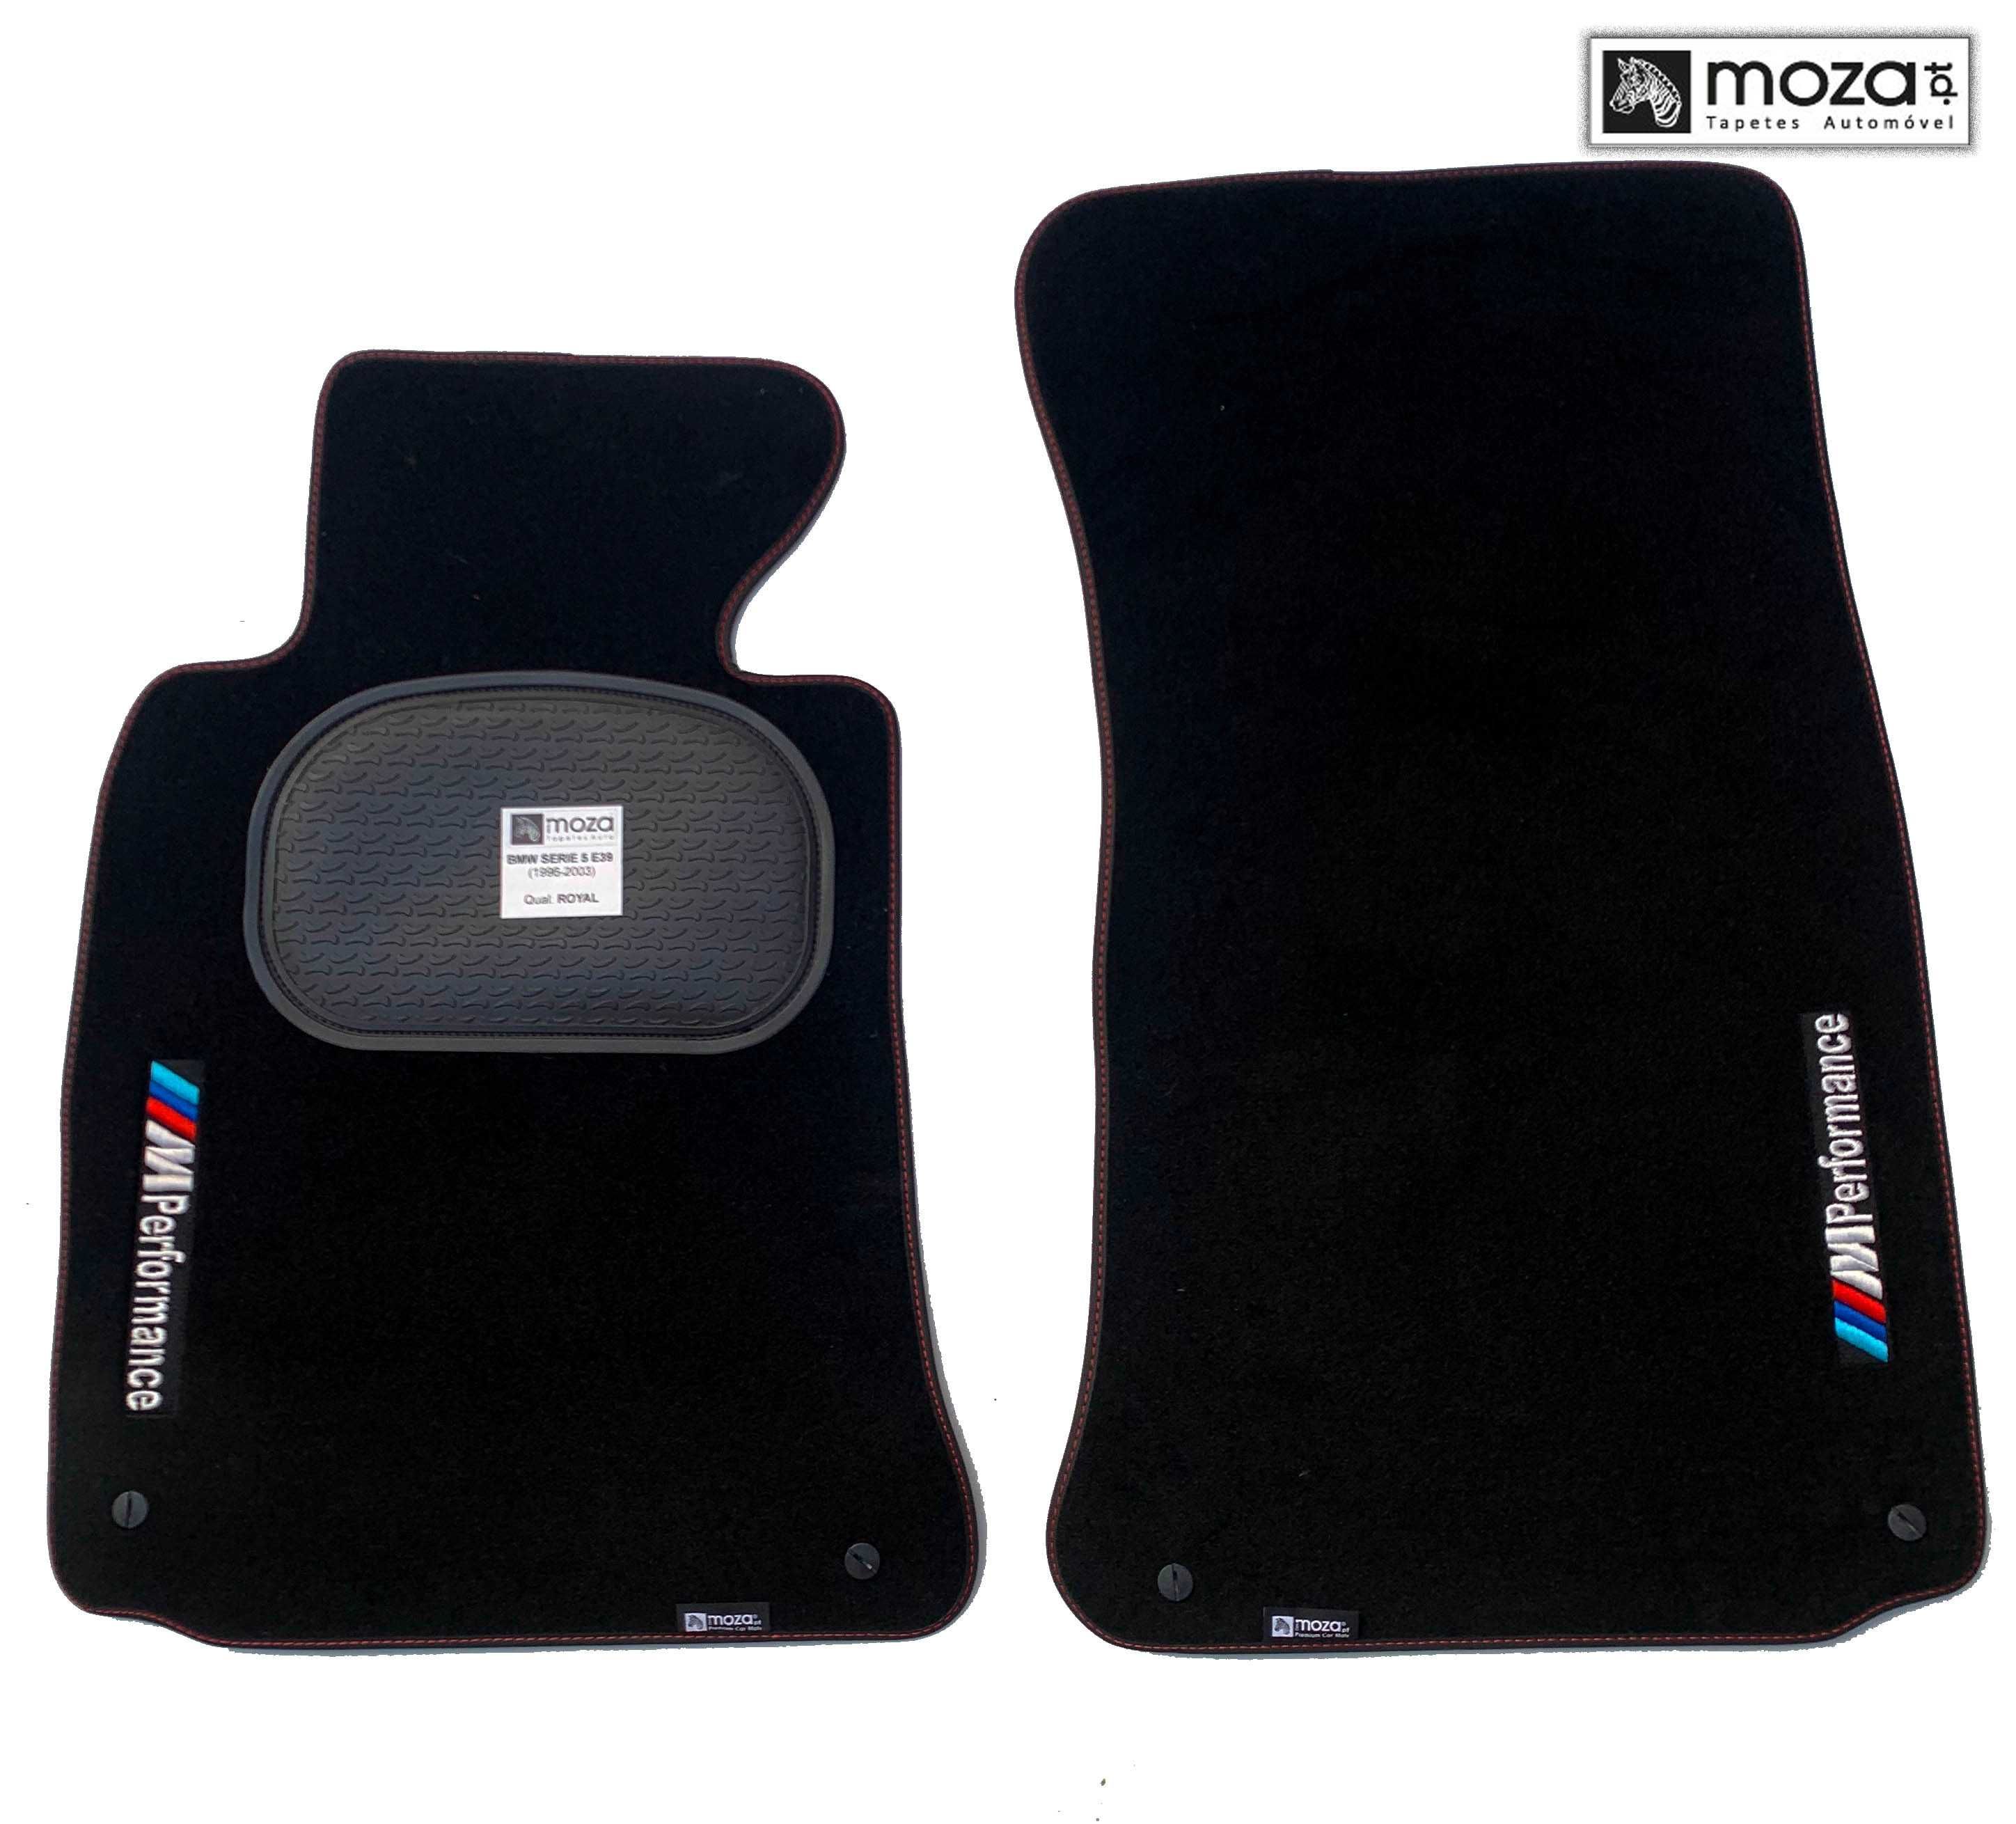 Tapetes BMW SERIE 5 E39 - Qualidade Original - MOZA.PT - STOCK